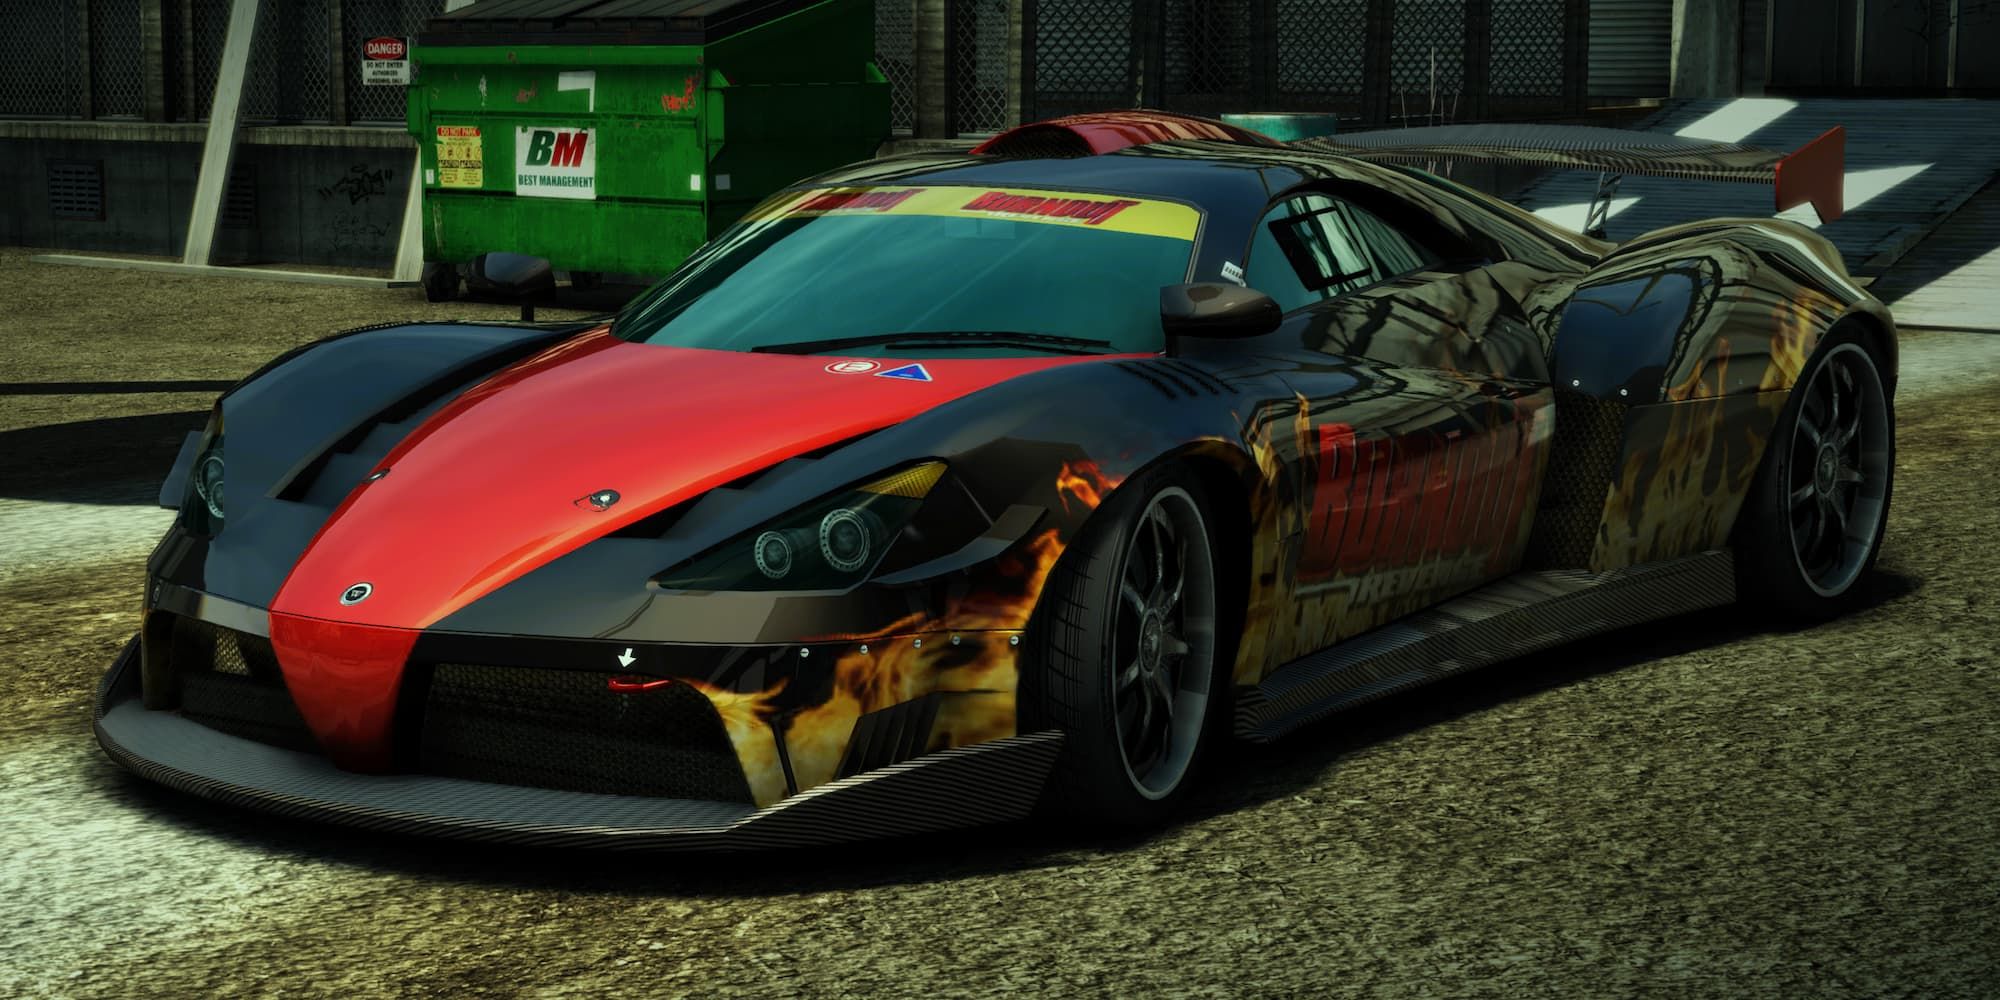 Revenge Racer in the junkyard